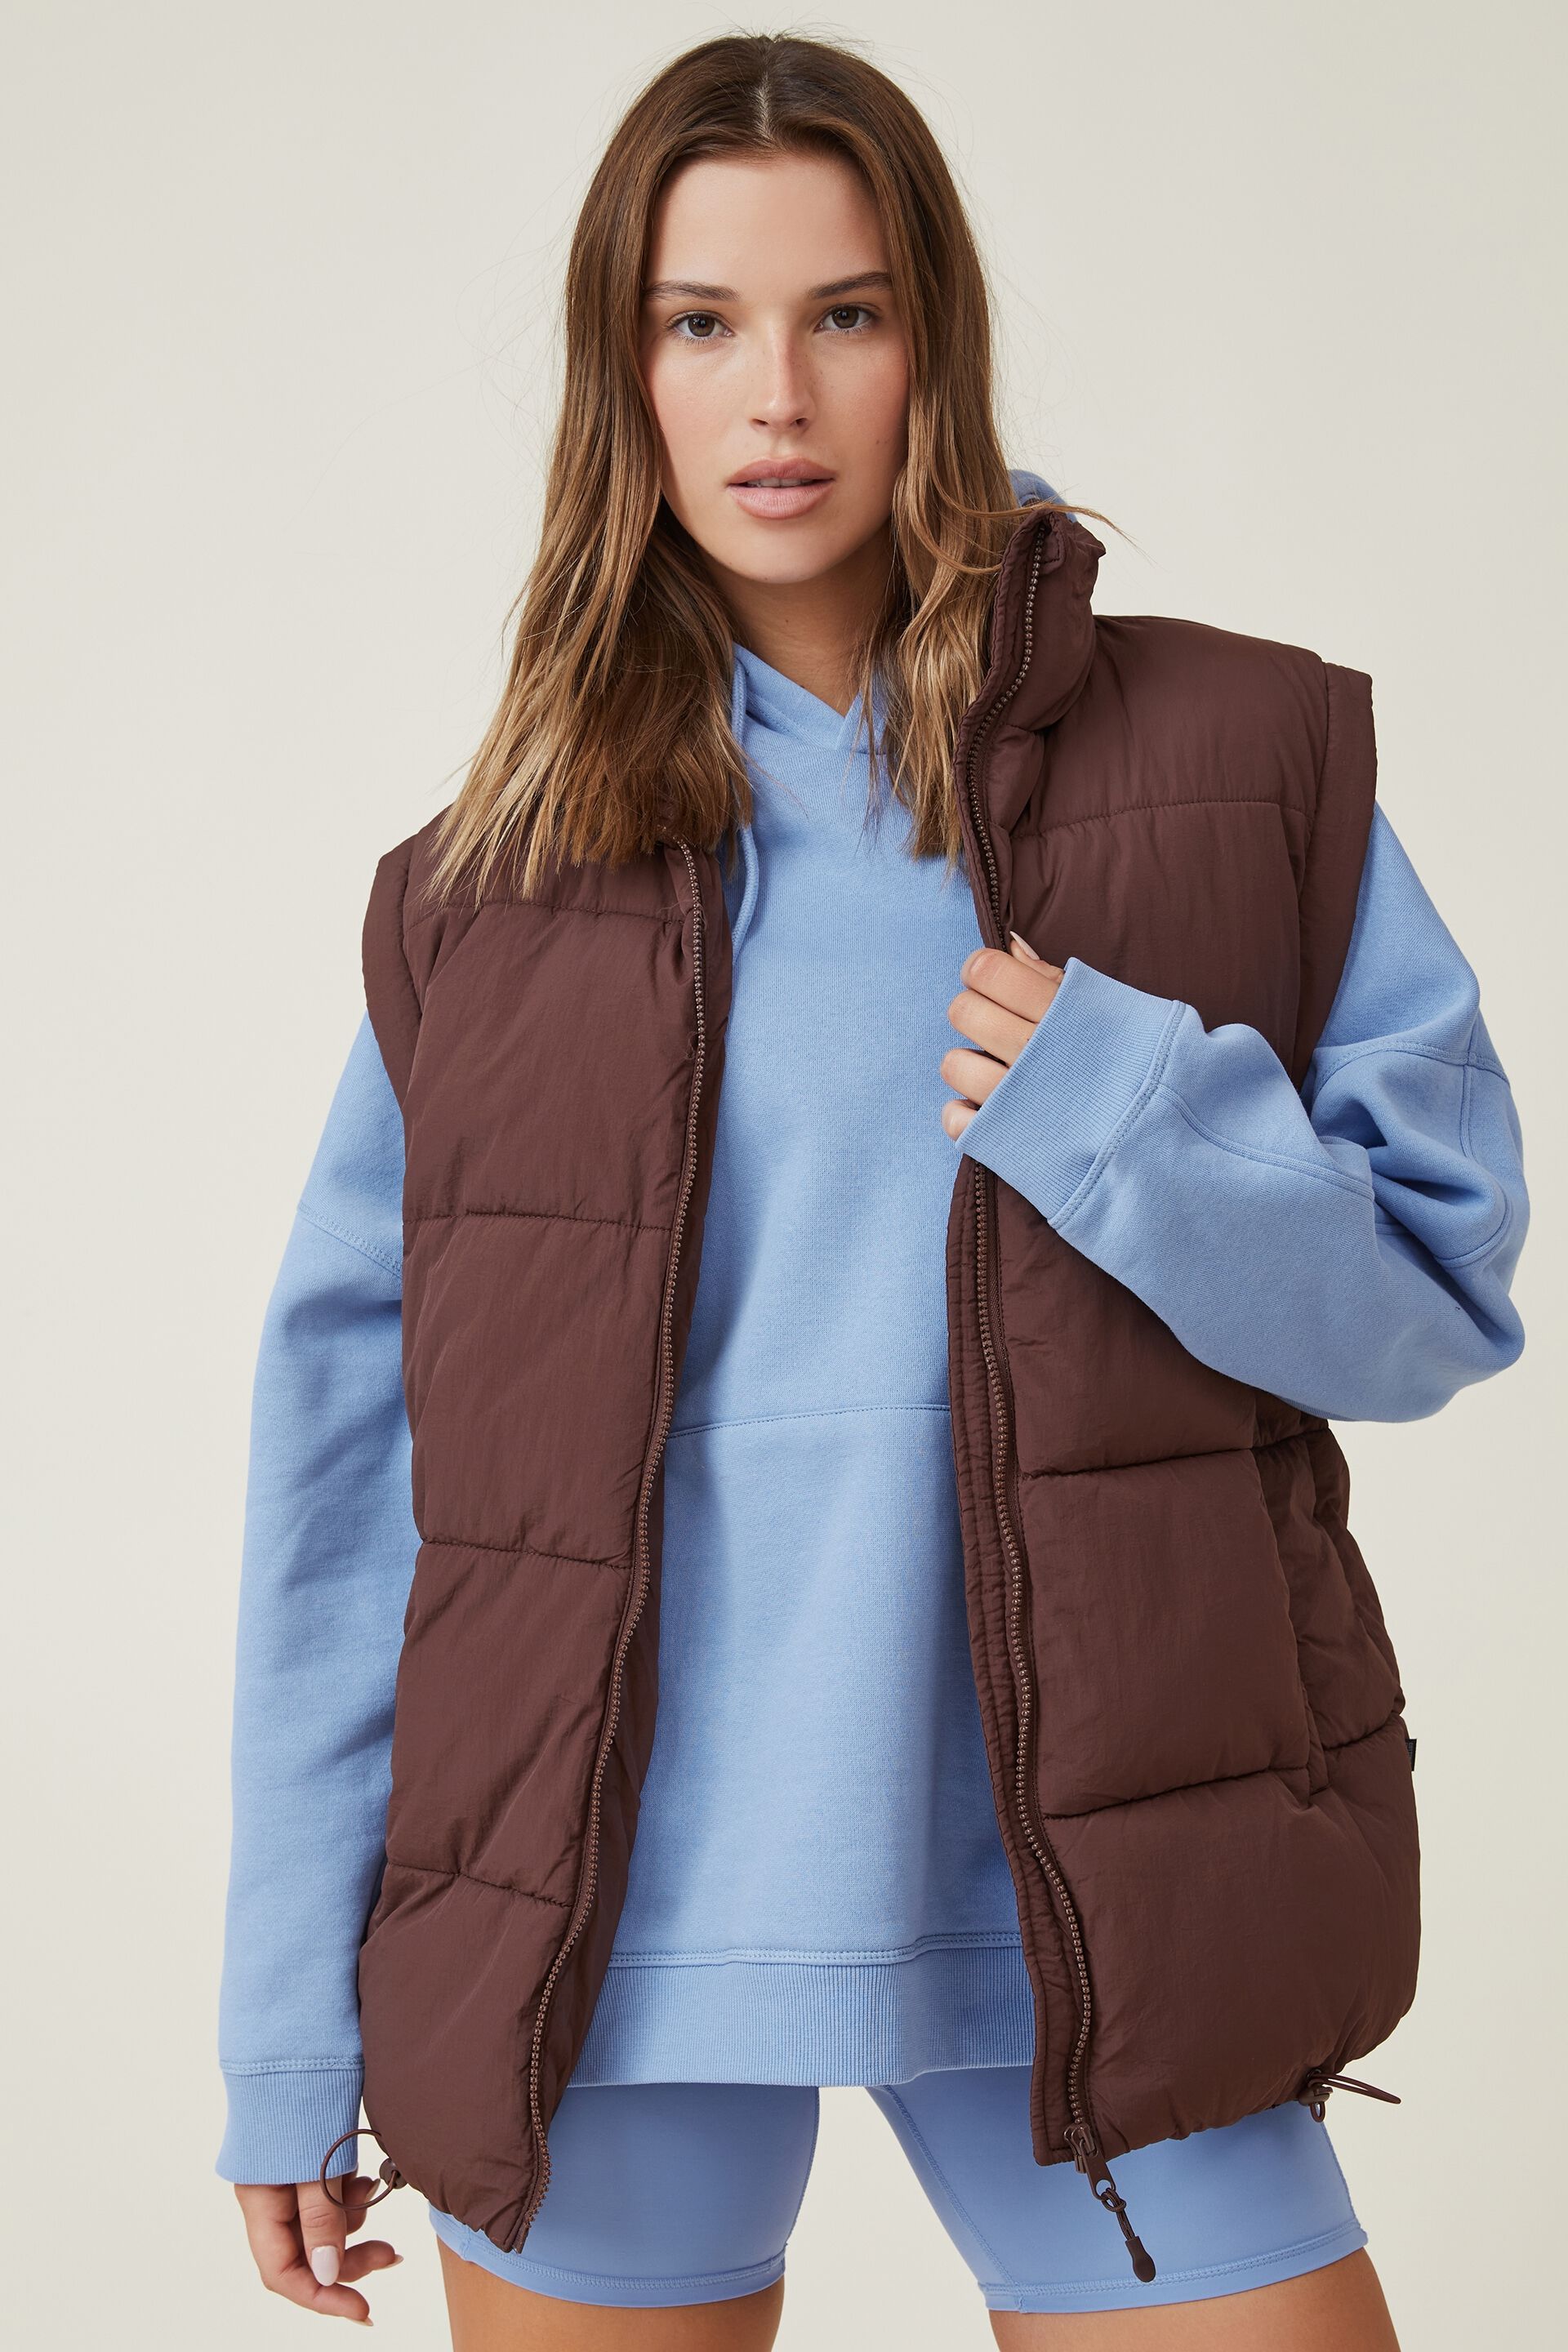 NoName vest WOMEN FASHION Jackets Vest Basic discount 70% Navy Blue M 